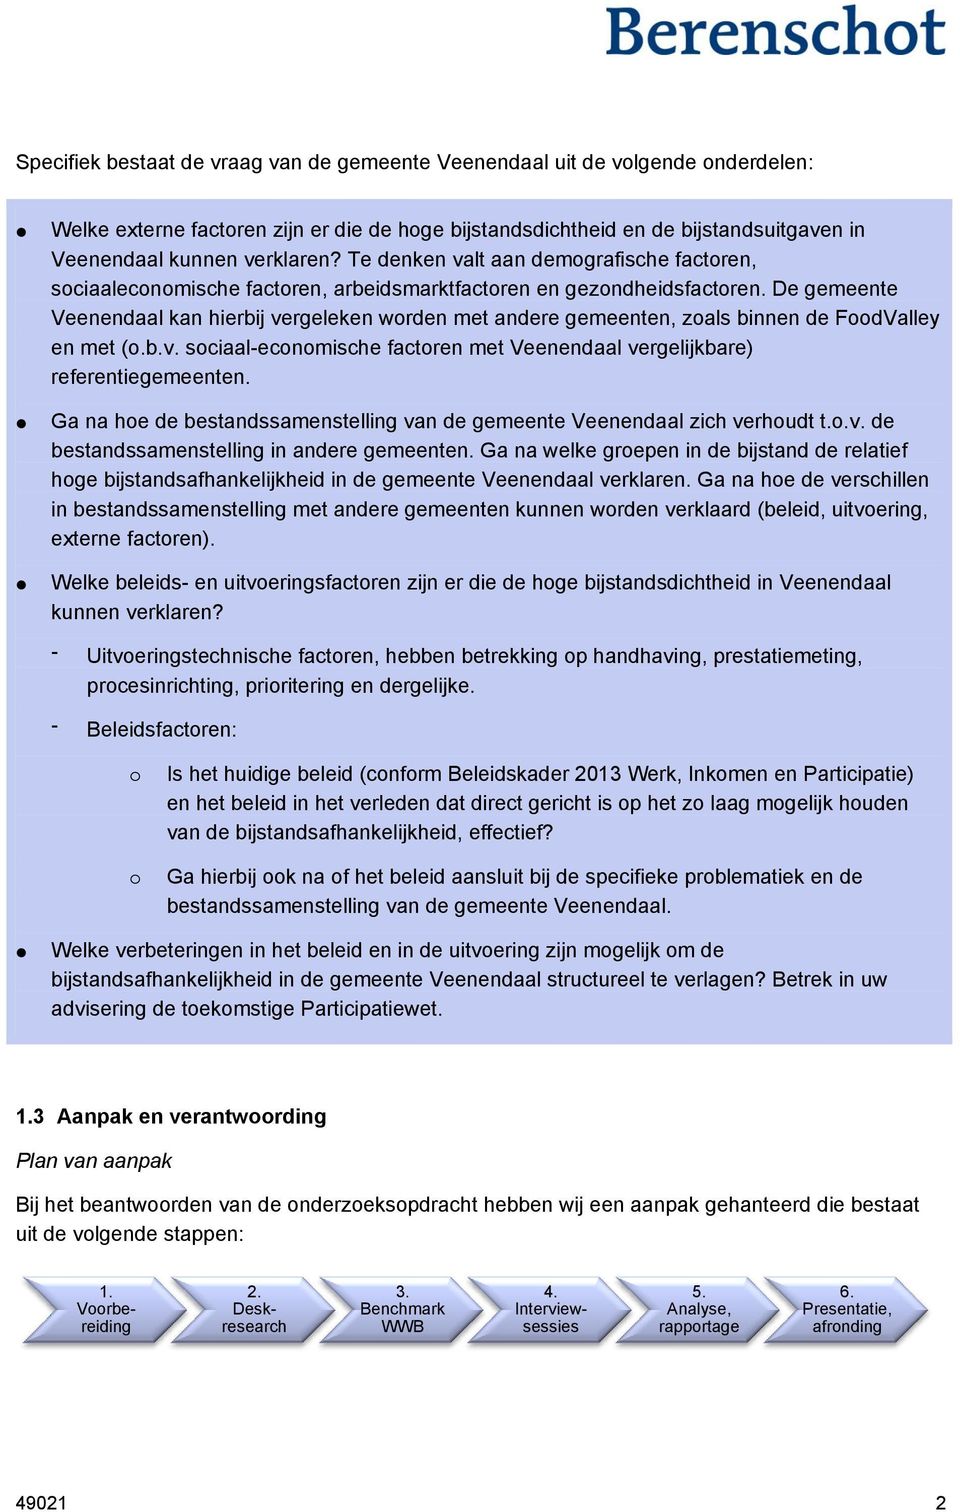 De gemeente Veenendaal kan hierbij vergeleken worden met andere gemeenten, zoals binnen de FoodValley en met (o.b.v. sociaal-economische factoren met Veenendaal vergelijkbare) referentiegemeenten.